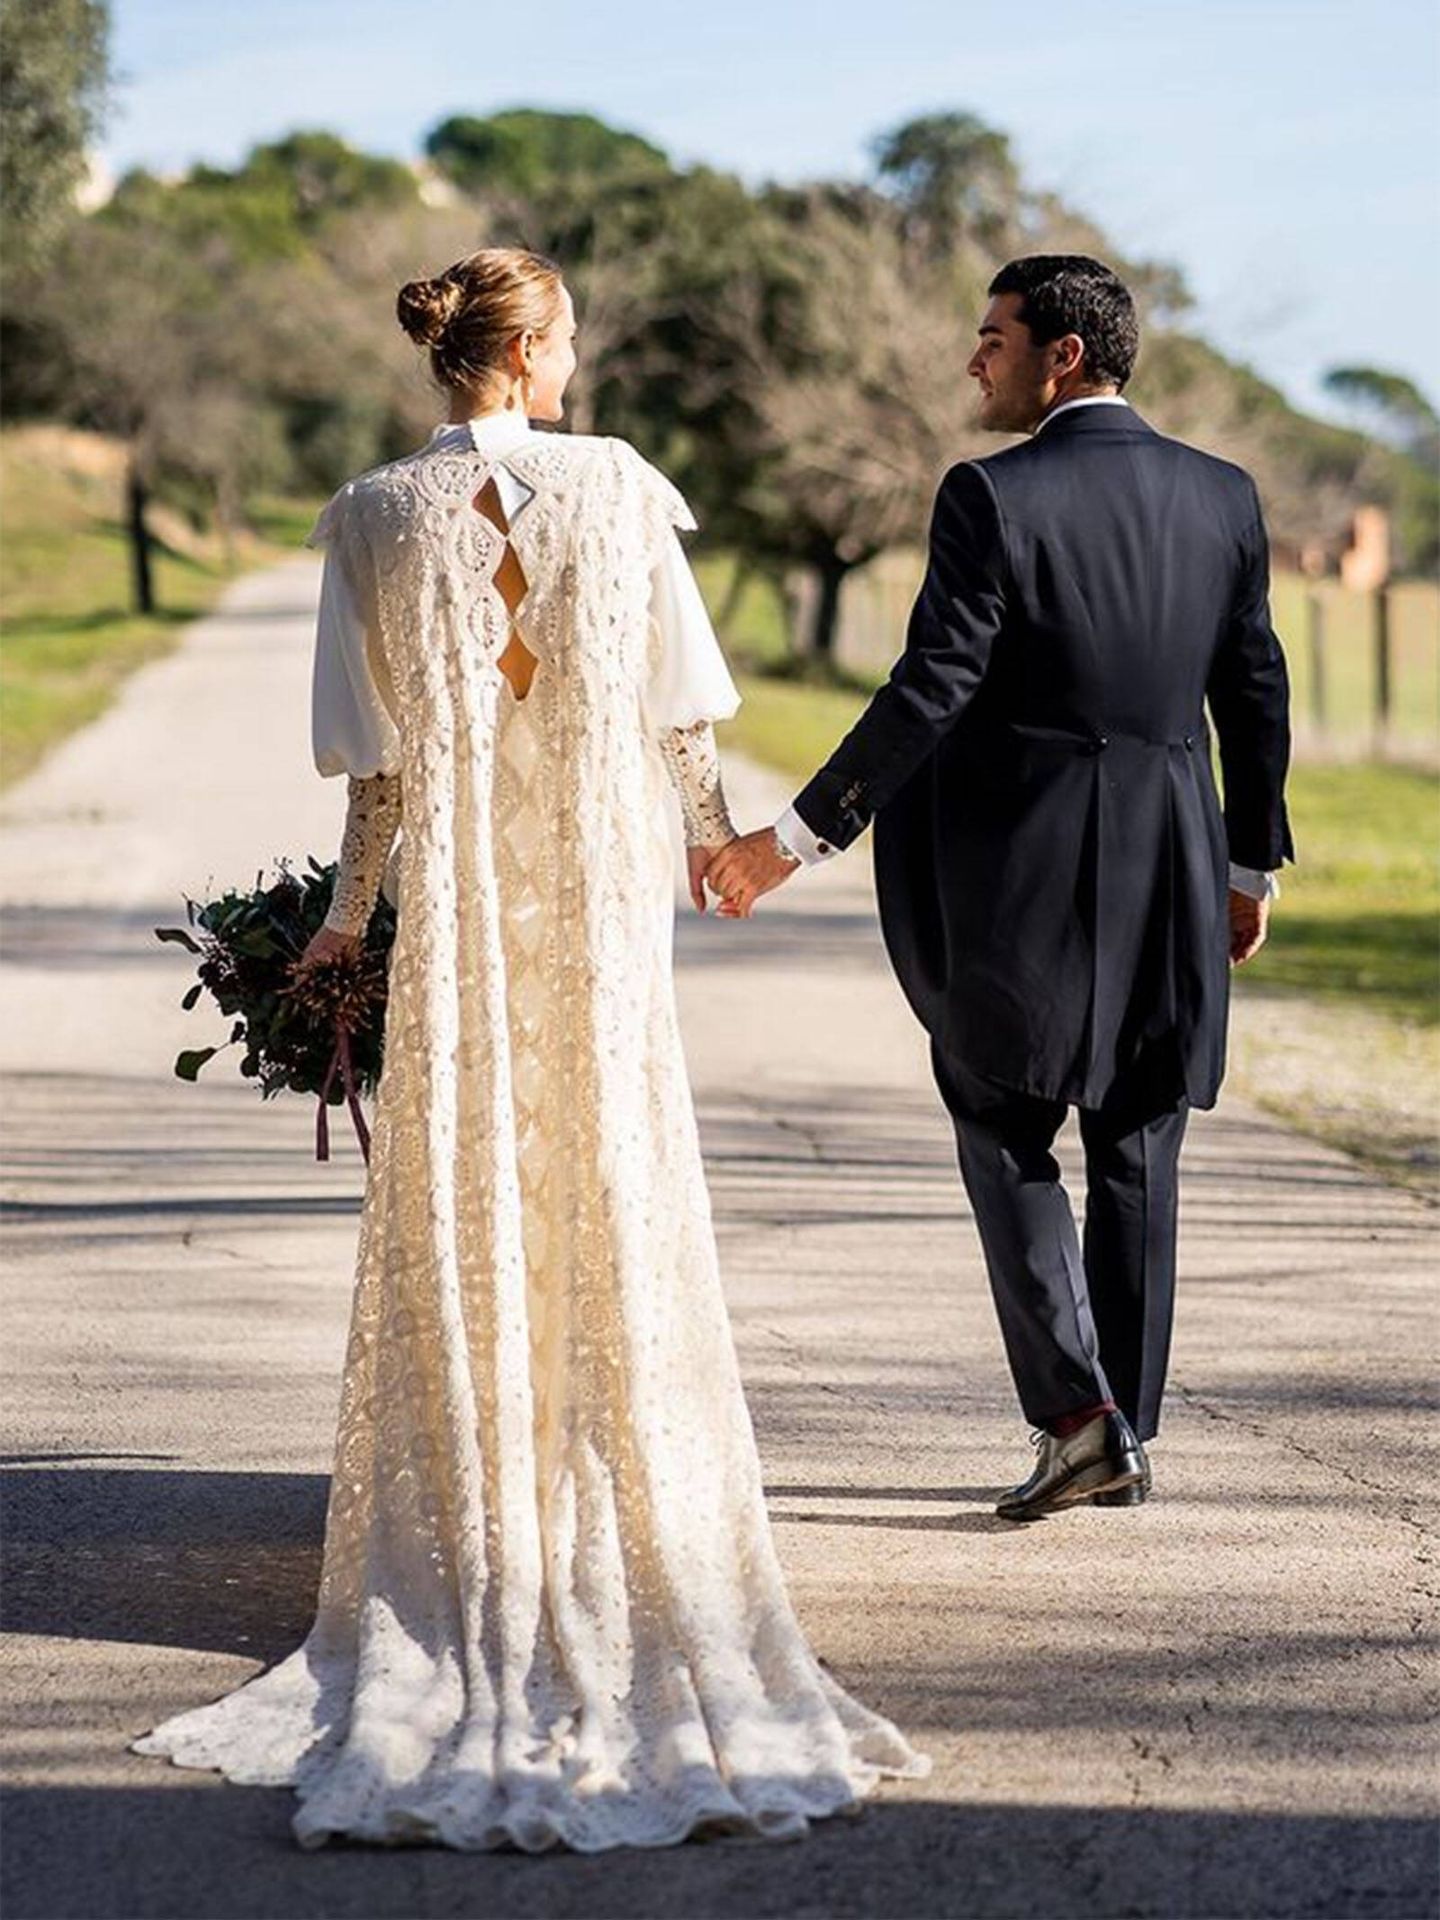 Reconoce los 9 tipos de encaje más habituales en vestidos de novia 